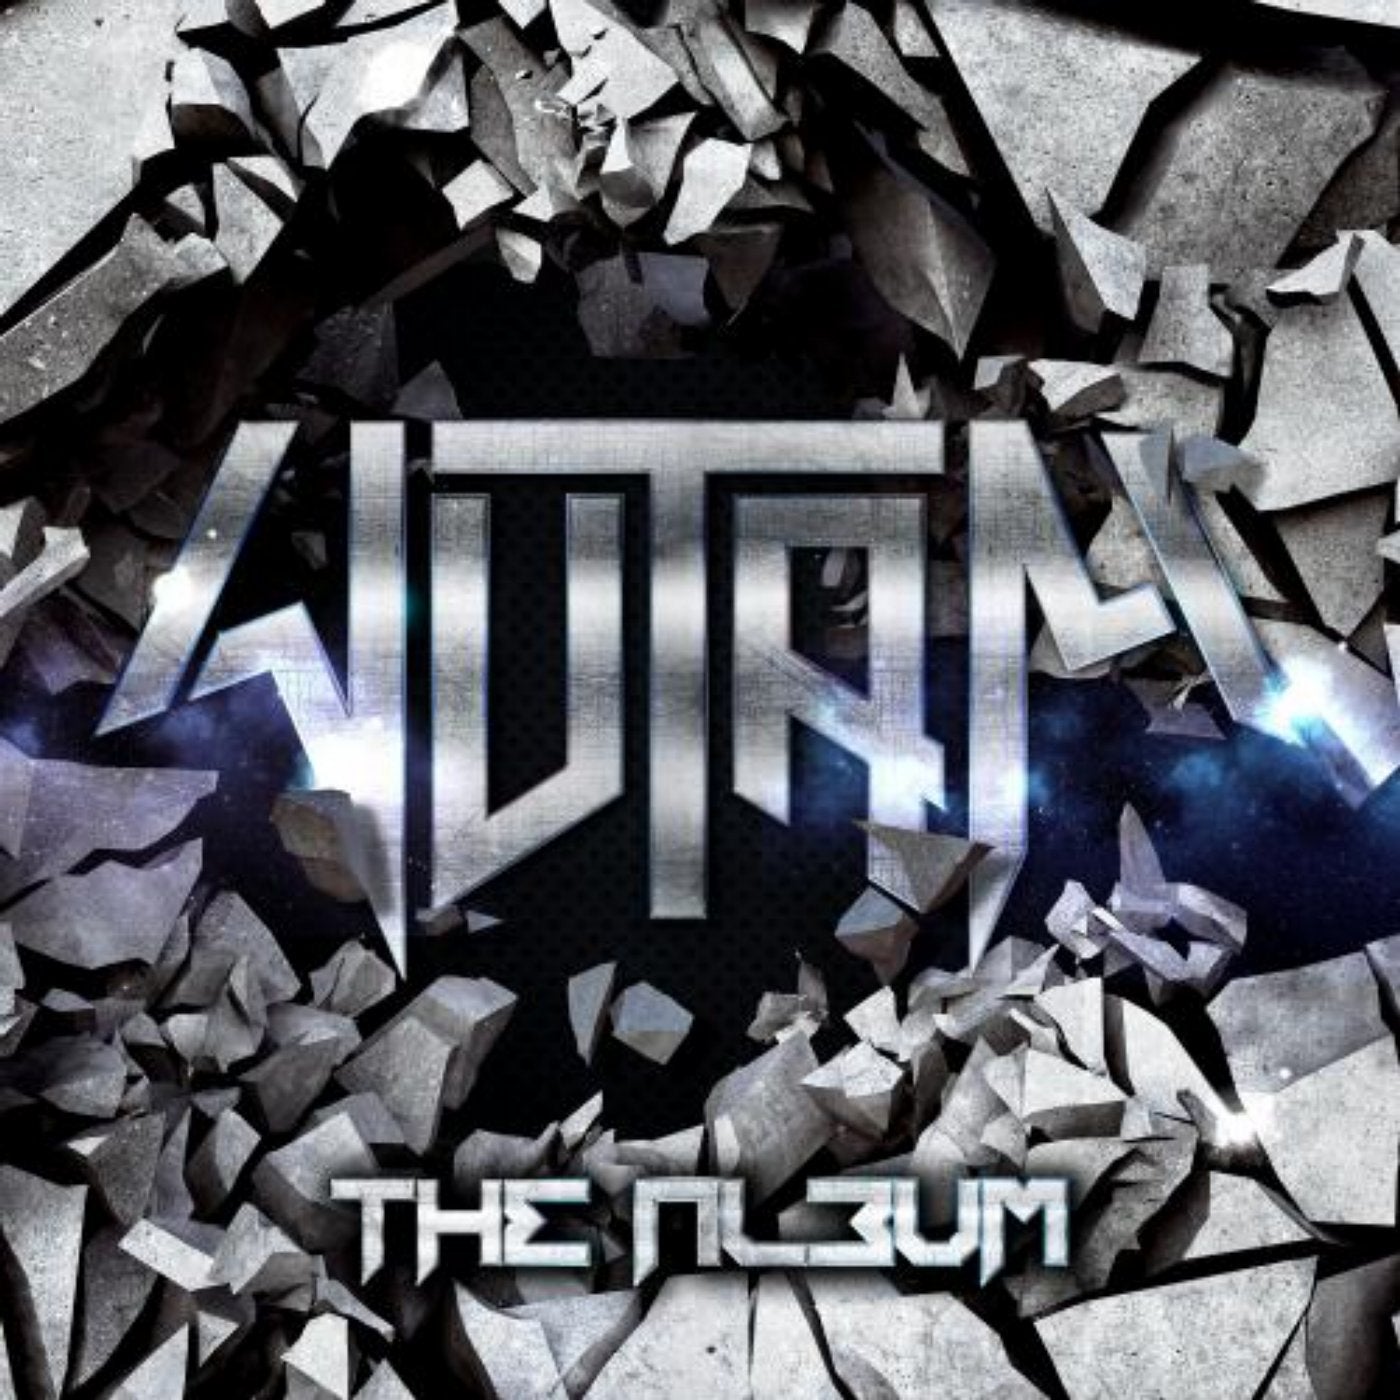 Wutam - The Album